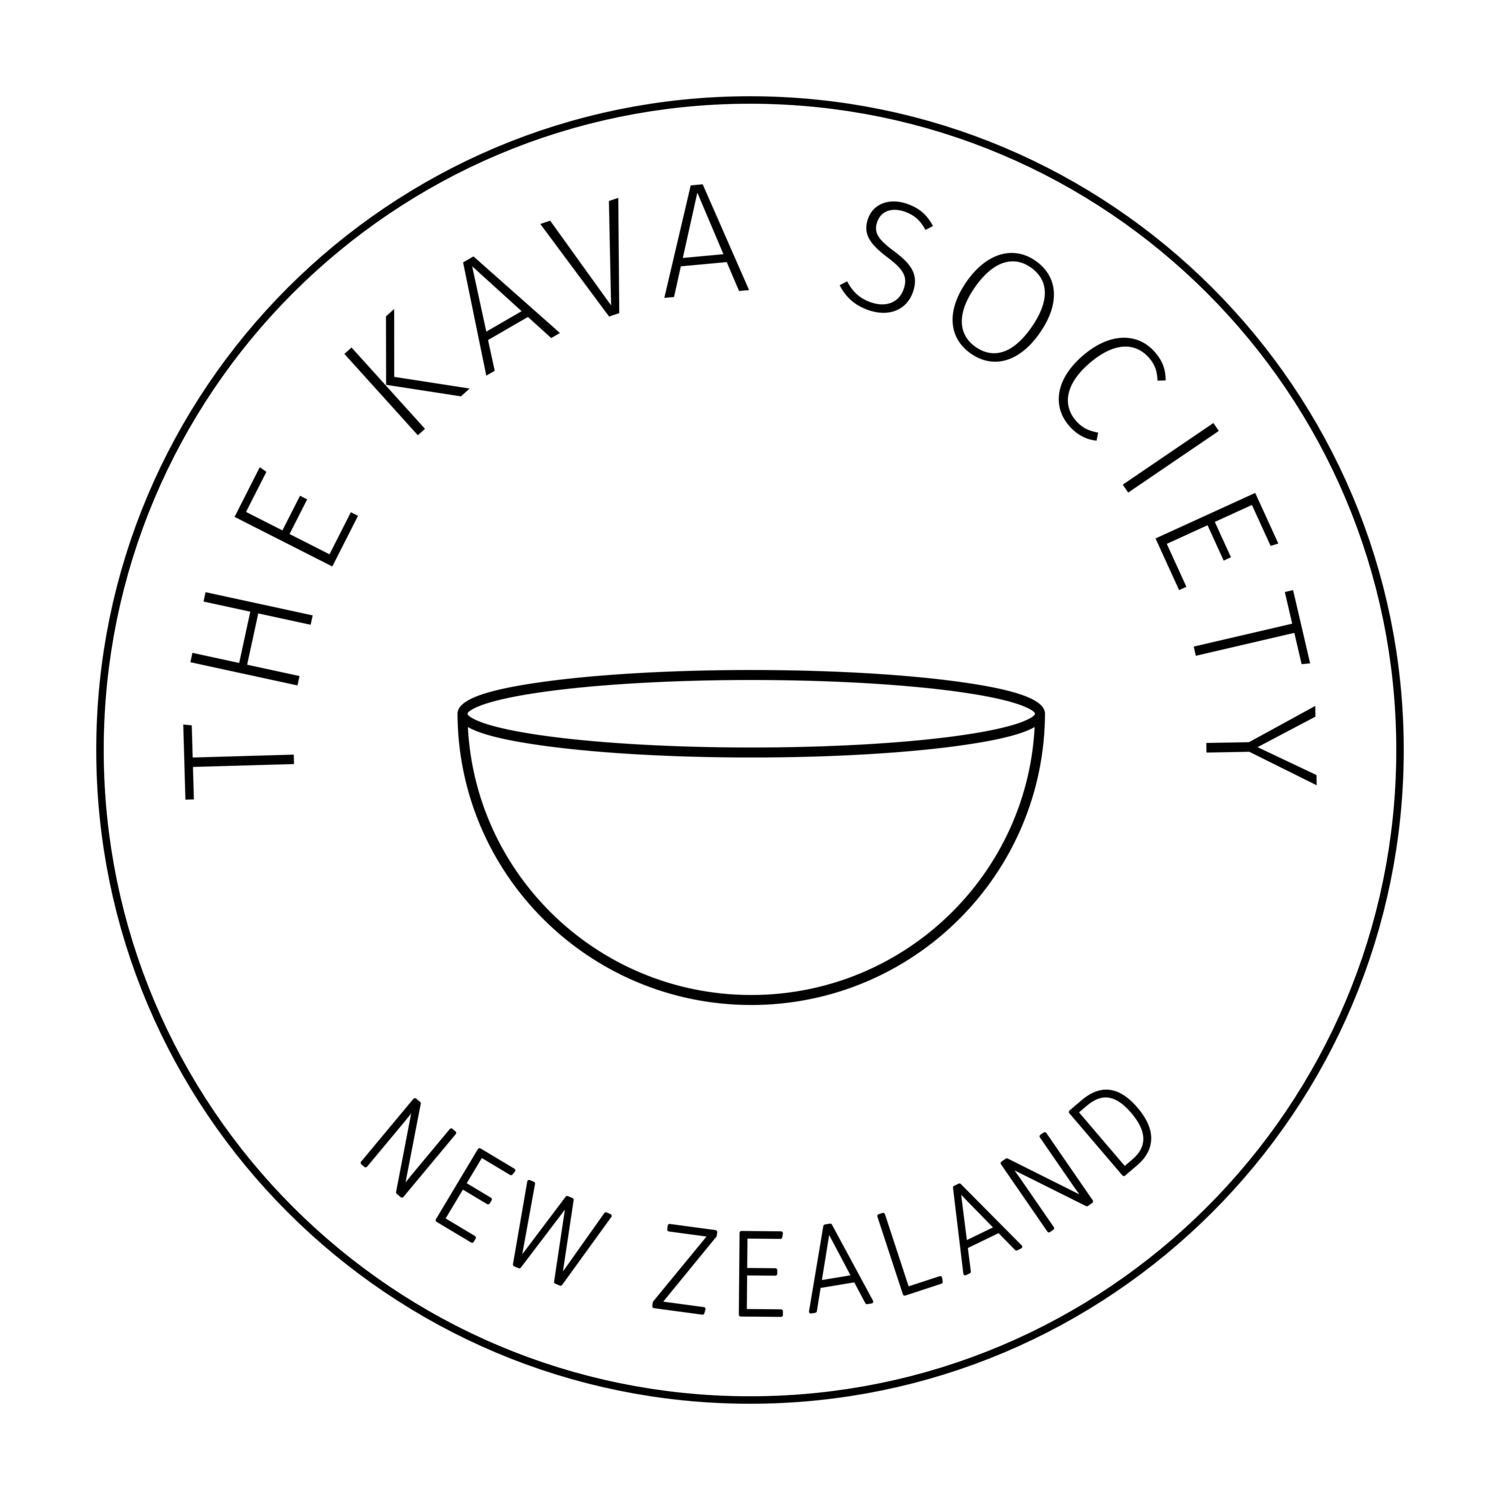 The Kava Society